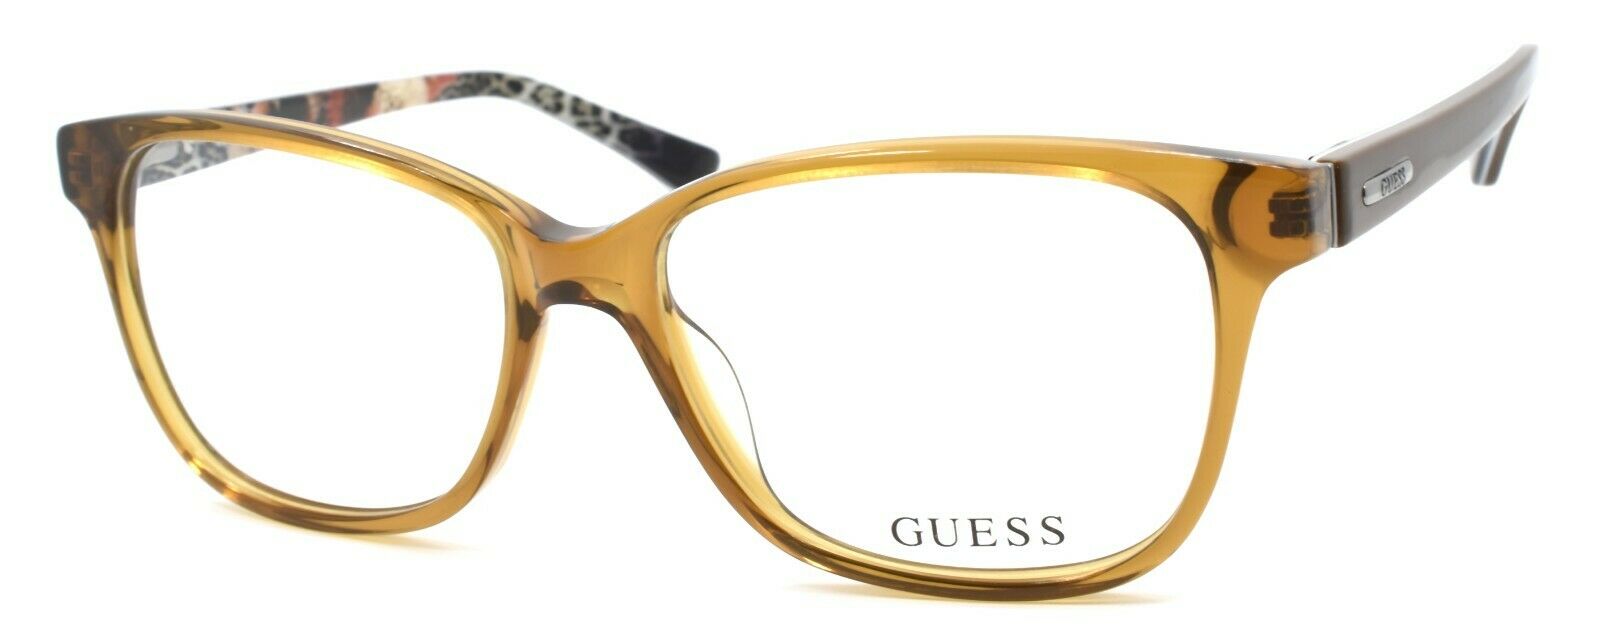 1-GUESS GU2506 047 Women's Eyeglasses Frames 52-15-135 Light Brown-664689712267-IKSpecs